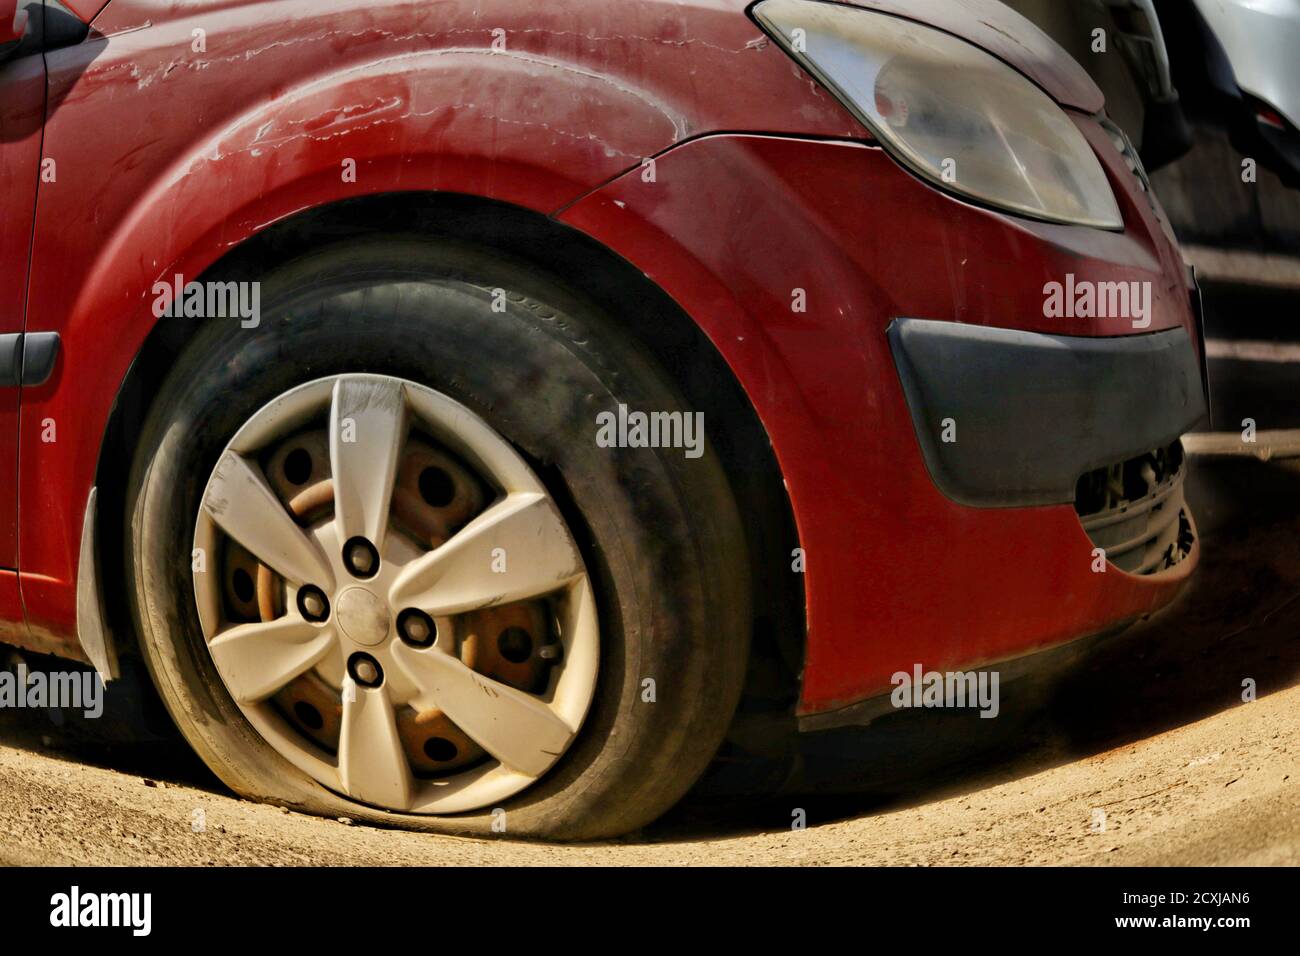 Vista di uno pneumatico della vettura forato. Il trie sgonfio è un problema comune con i veicoli e potrebbe causare incidenti Foto Stock